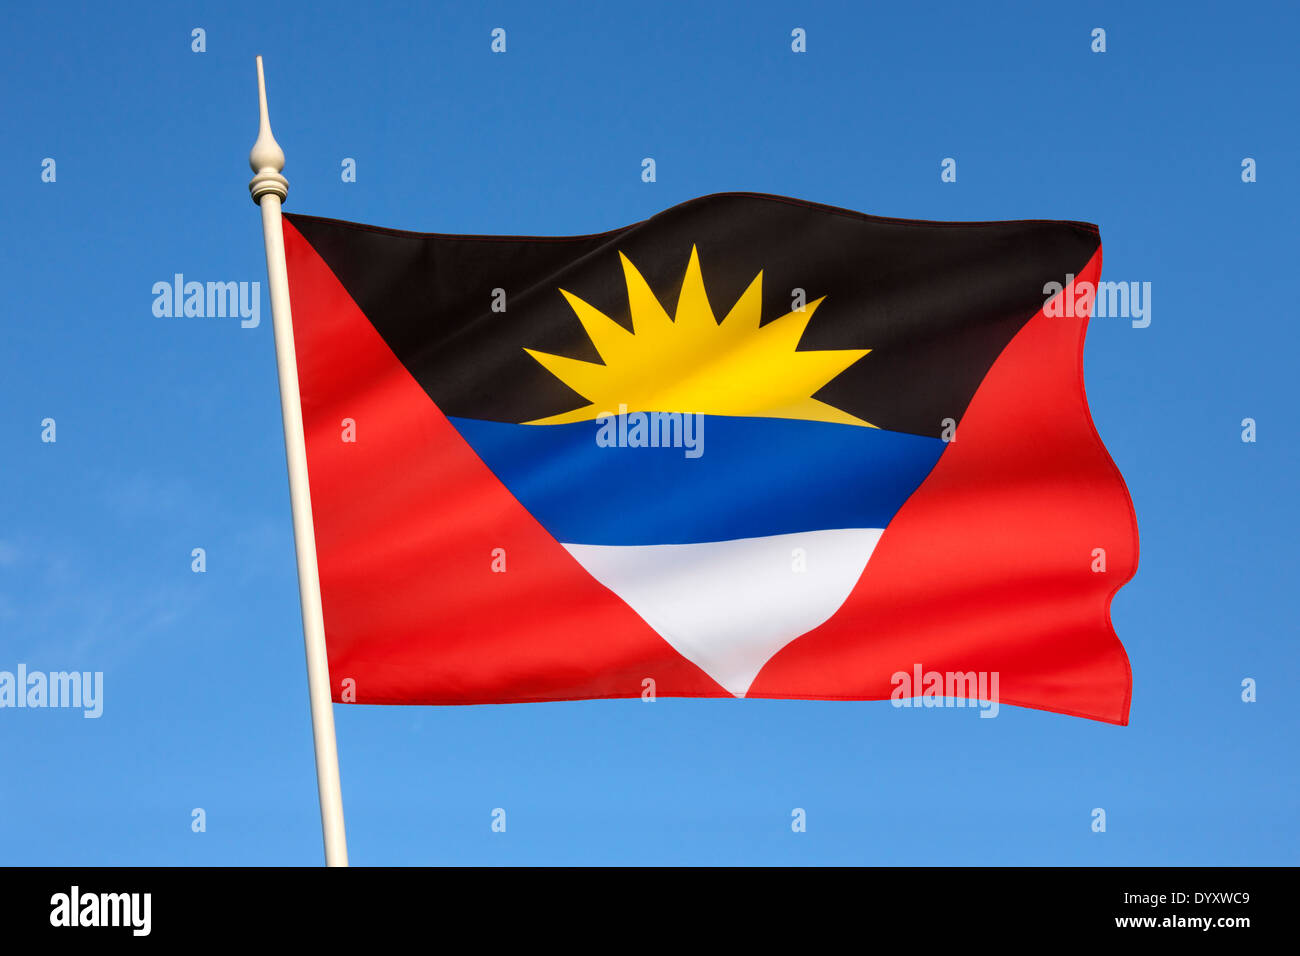 Le drapeau national d'Antigua-et-Barbuda Banque D'Images